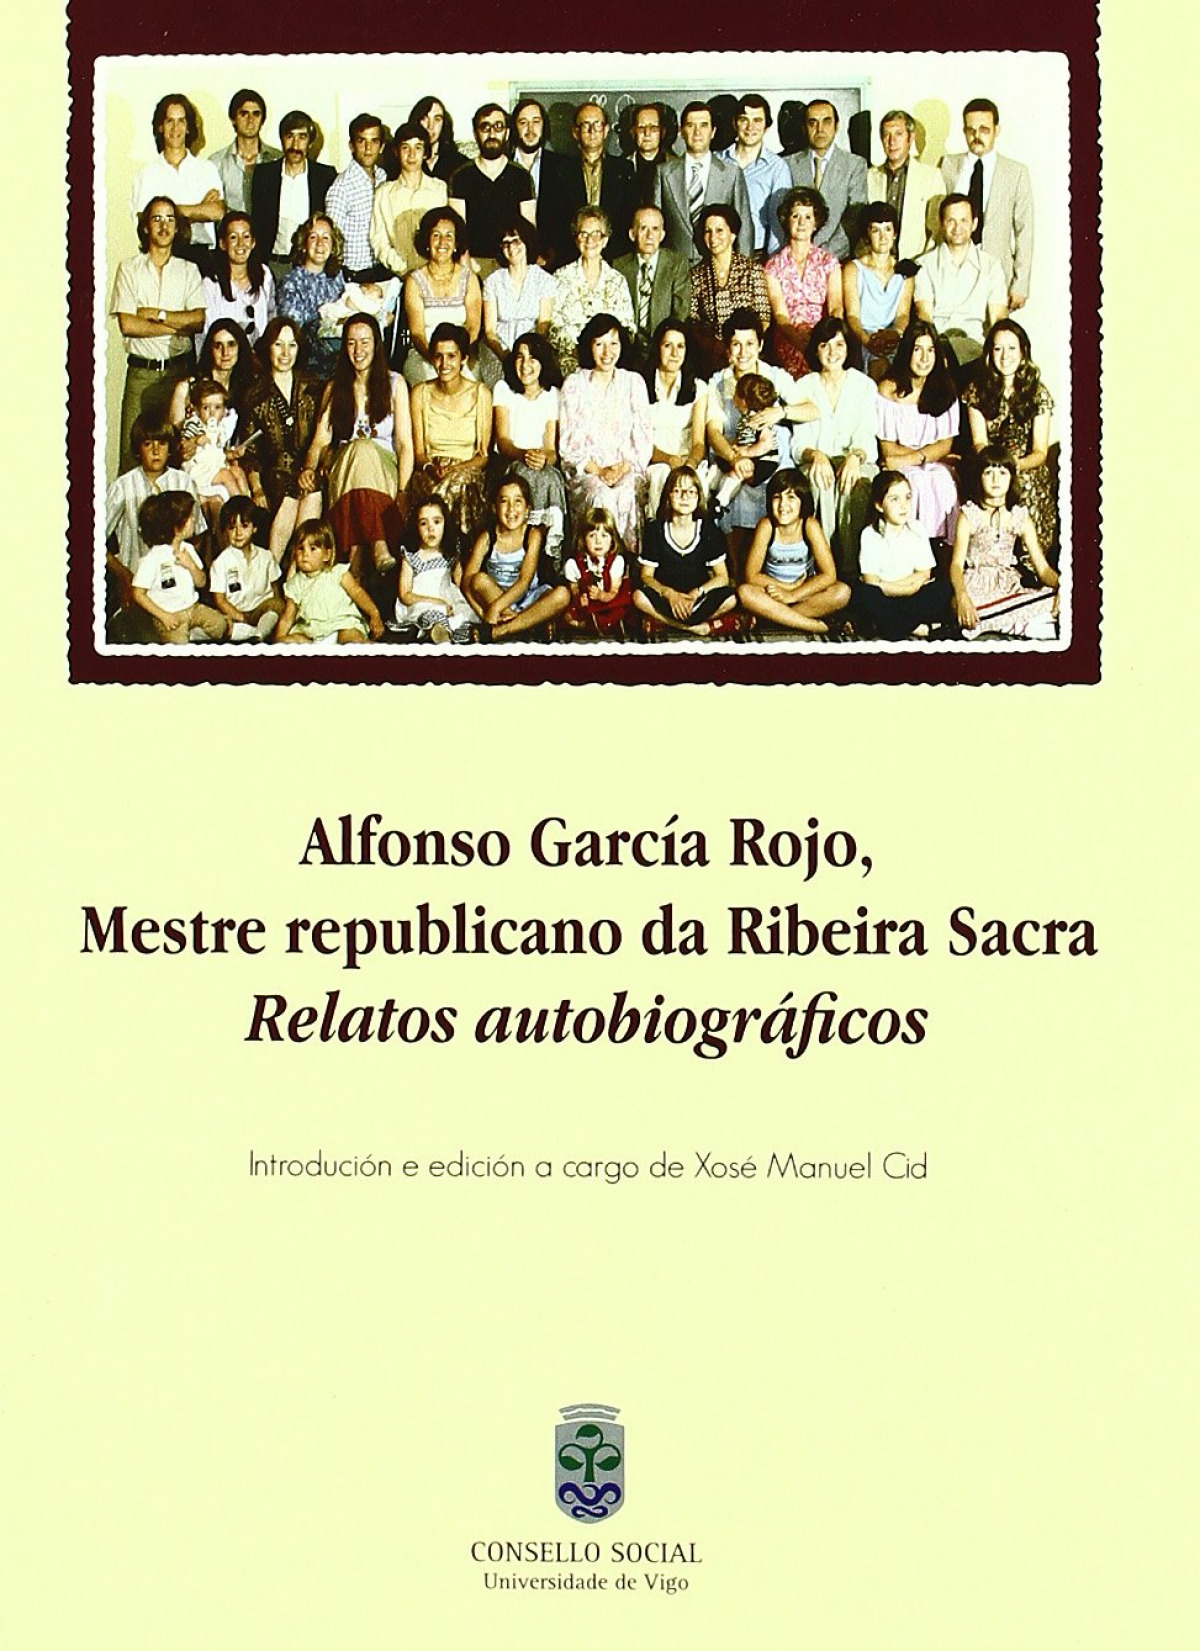 Alfonso Garcia Rojo, mestre republicano ribeira sacra - Vv.Aa.